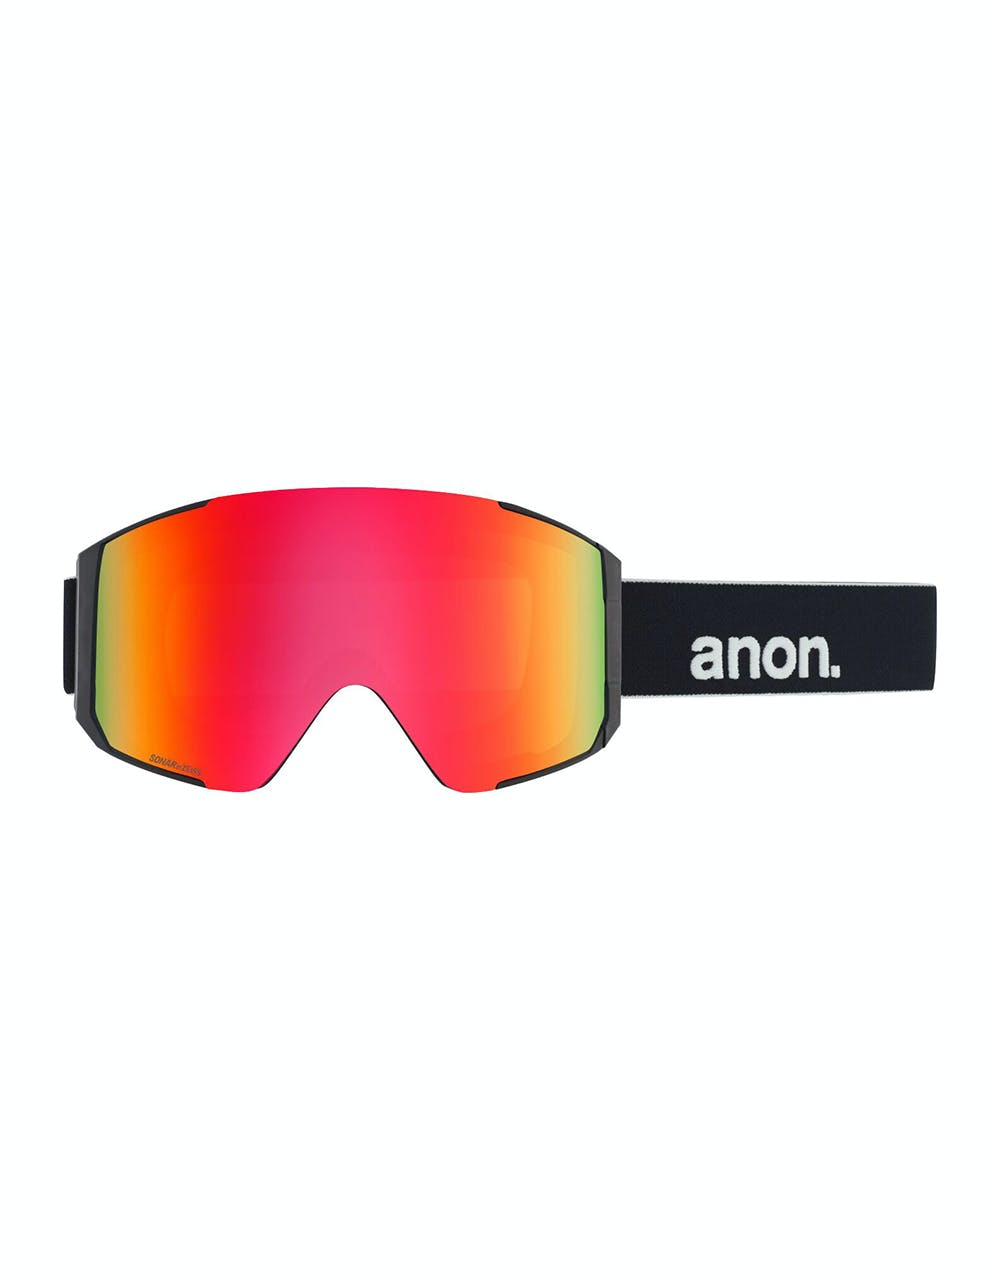 Anon Sync Snowboard Goggles - Black/Sonar Red